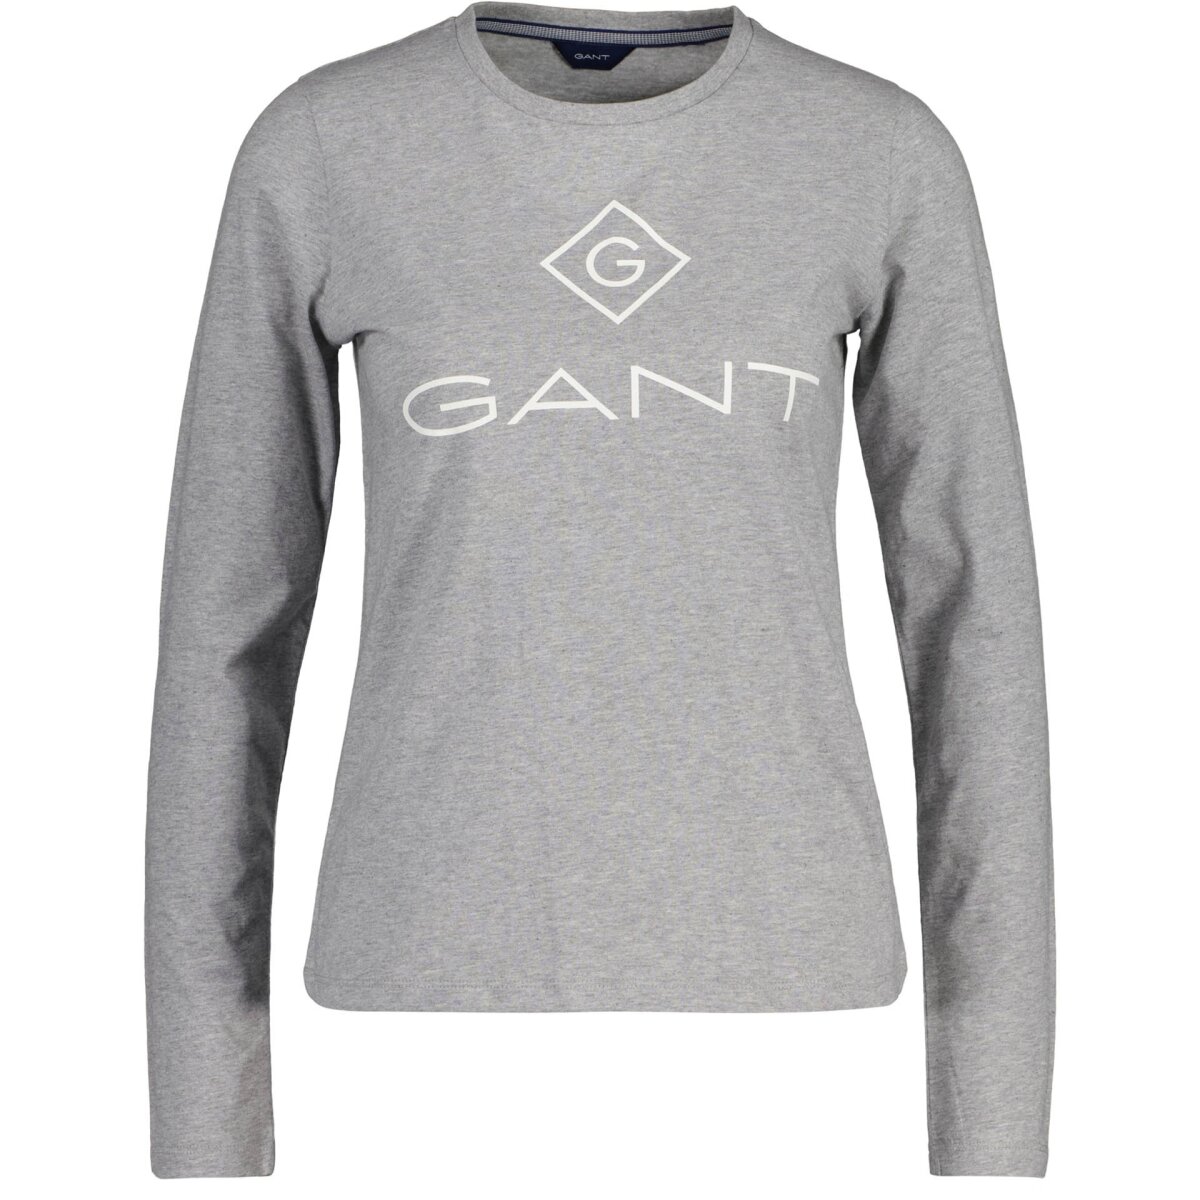 UP, € GANT 49,95 Langarm T-Shirt Damen - LOCK